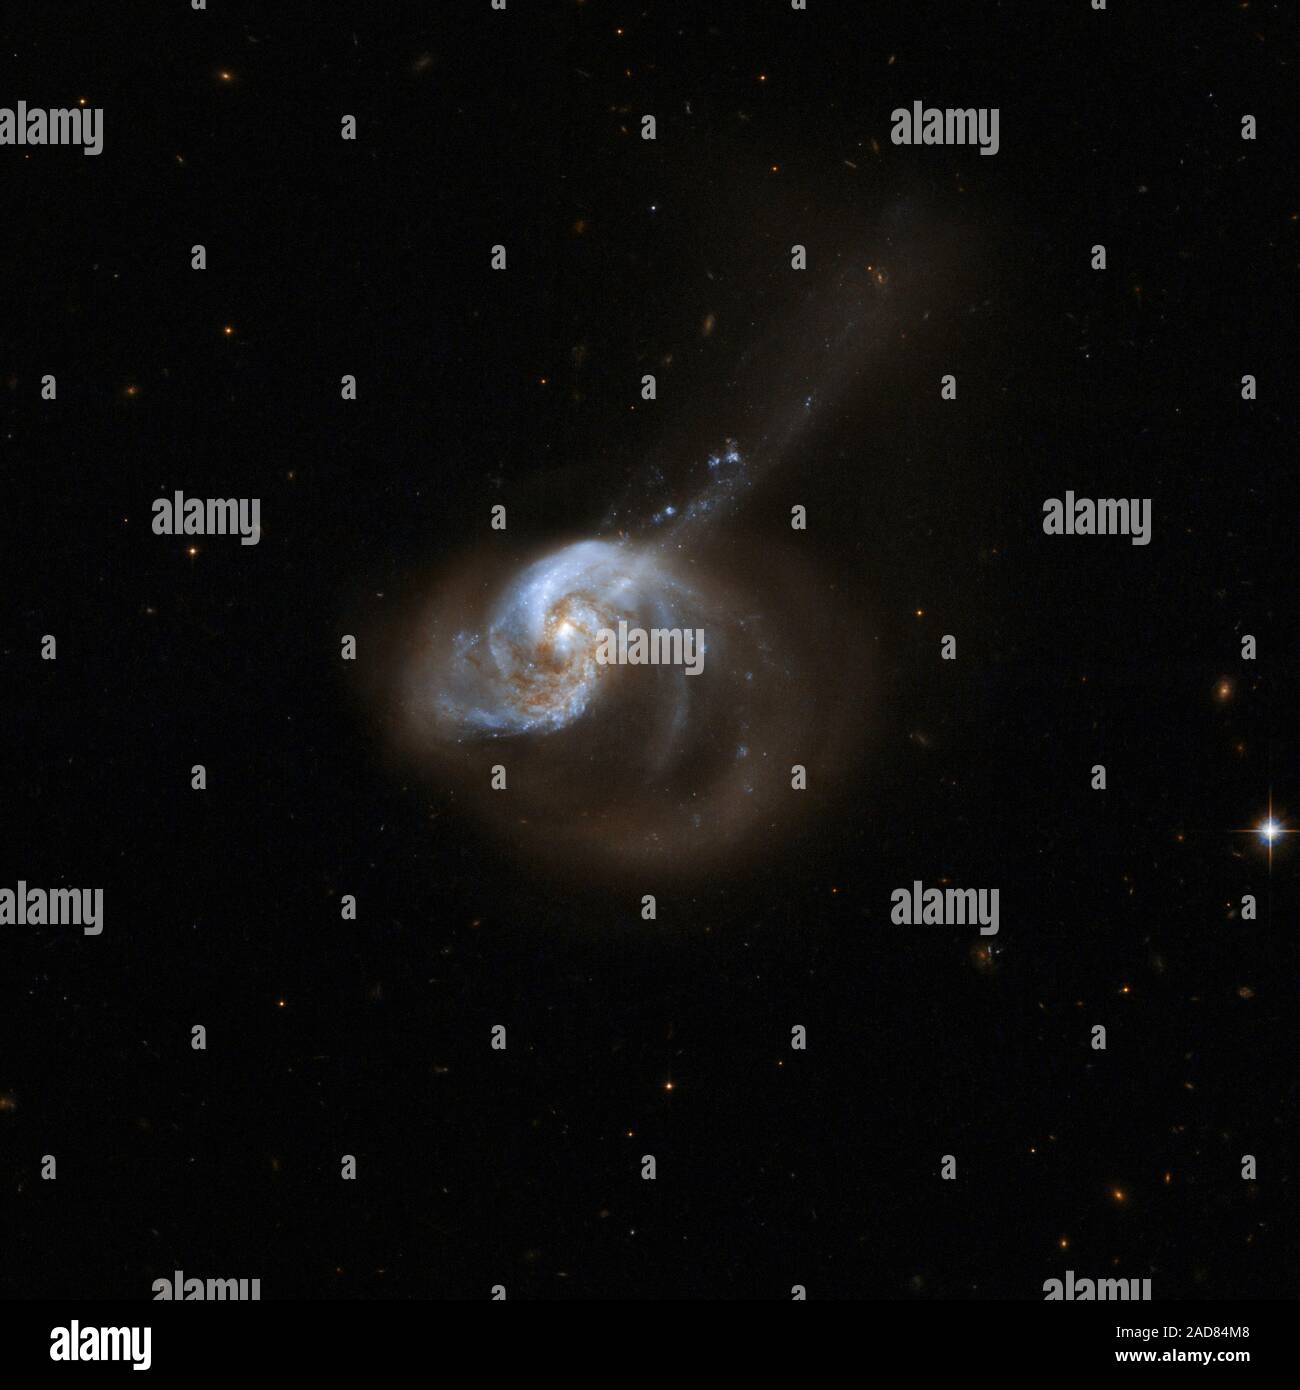 El sistema de la galaxia NGC 1614 tiene un centro óptico brillante y dos brazos espirales interiores claros que son bastante simétricas. También tiene una espectacular estructura exterior que consiste principalmente en una gran extensión curvada de una cara de una de estas armas a la parte inferior derecha, y una larga cola casi recta, que emerge desde el núcleo y cruza el brazo extendido a la parte superior derecha. La galaxia parece ser el resultado de una interacción de marea y la consiguiente fusión de dos sistemas predecesores. El sistema tiene una región nuclear de quasar-como la luminosidad, pero no muestra evidencia directa de un núcleo activo. Ella Foto de stock